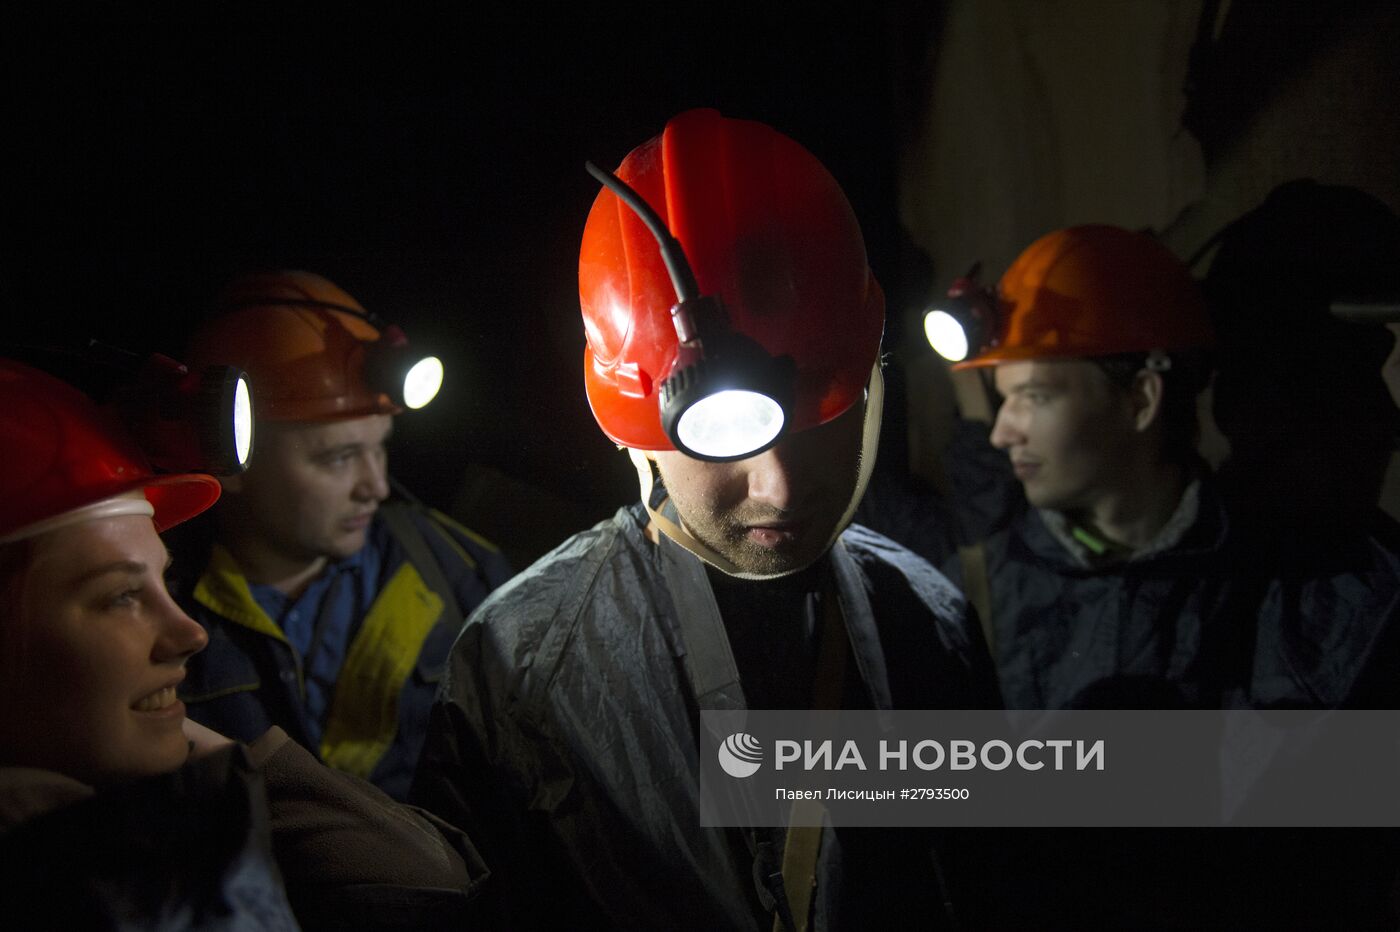 Березовский золотоносный рудник в Свердловской области